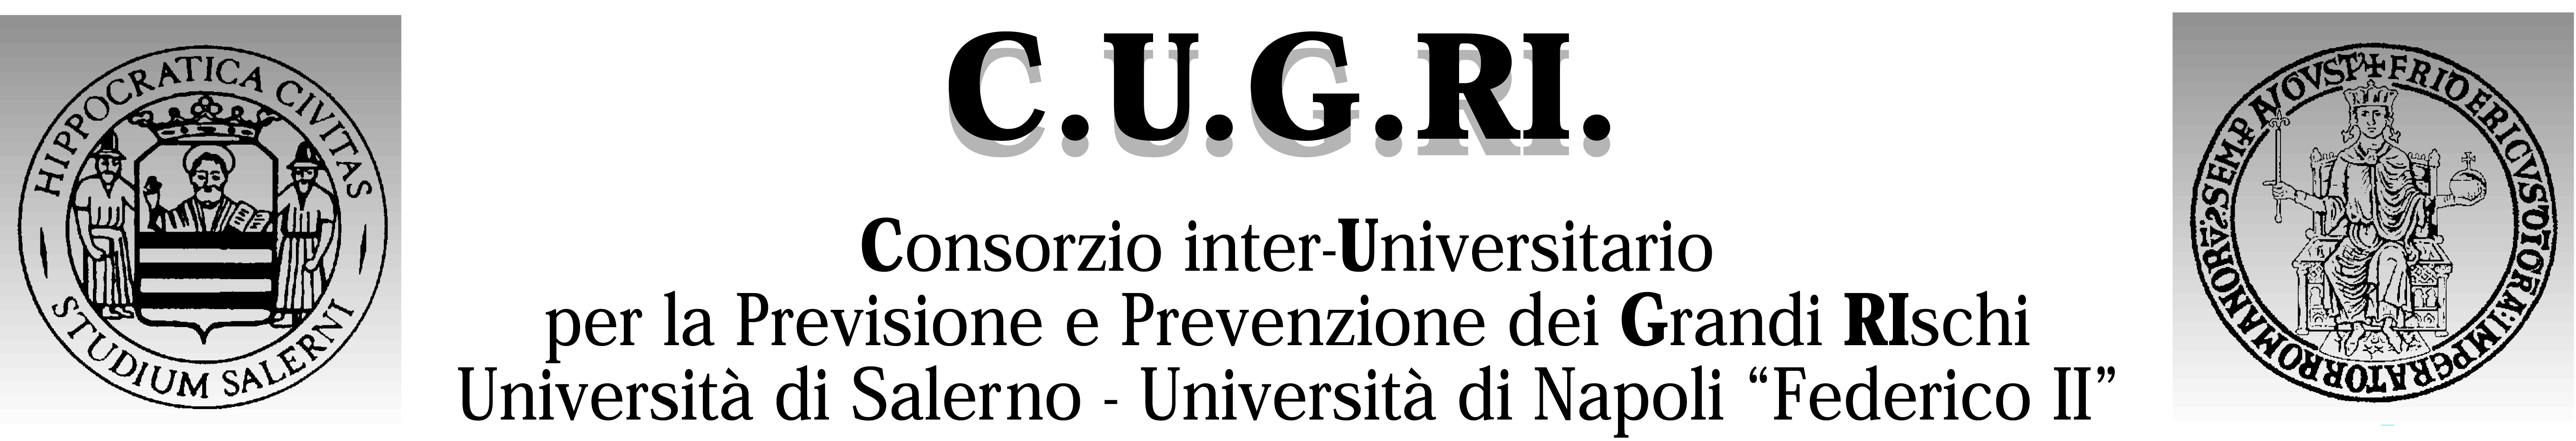 logo_Cugri